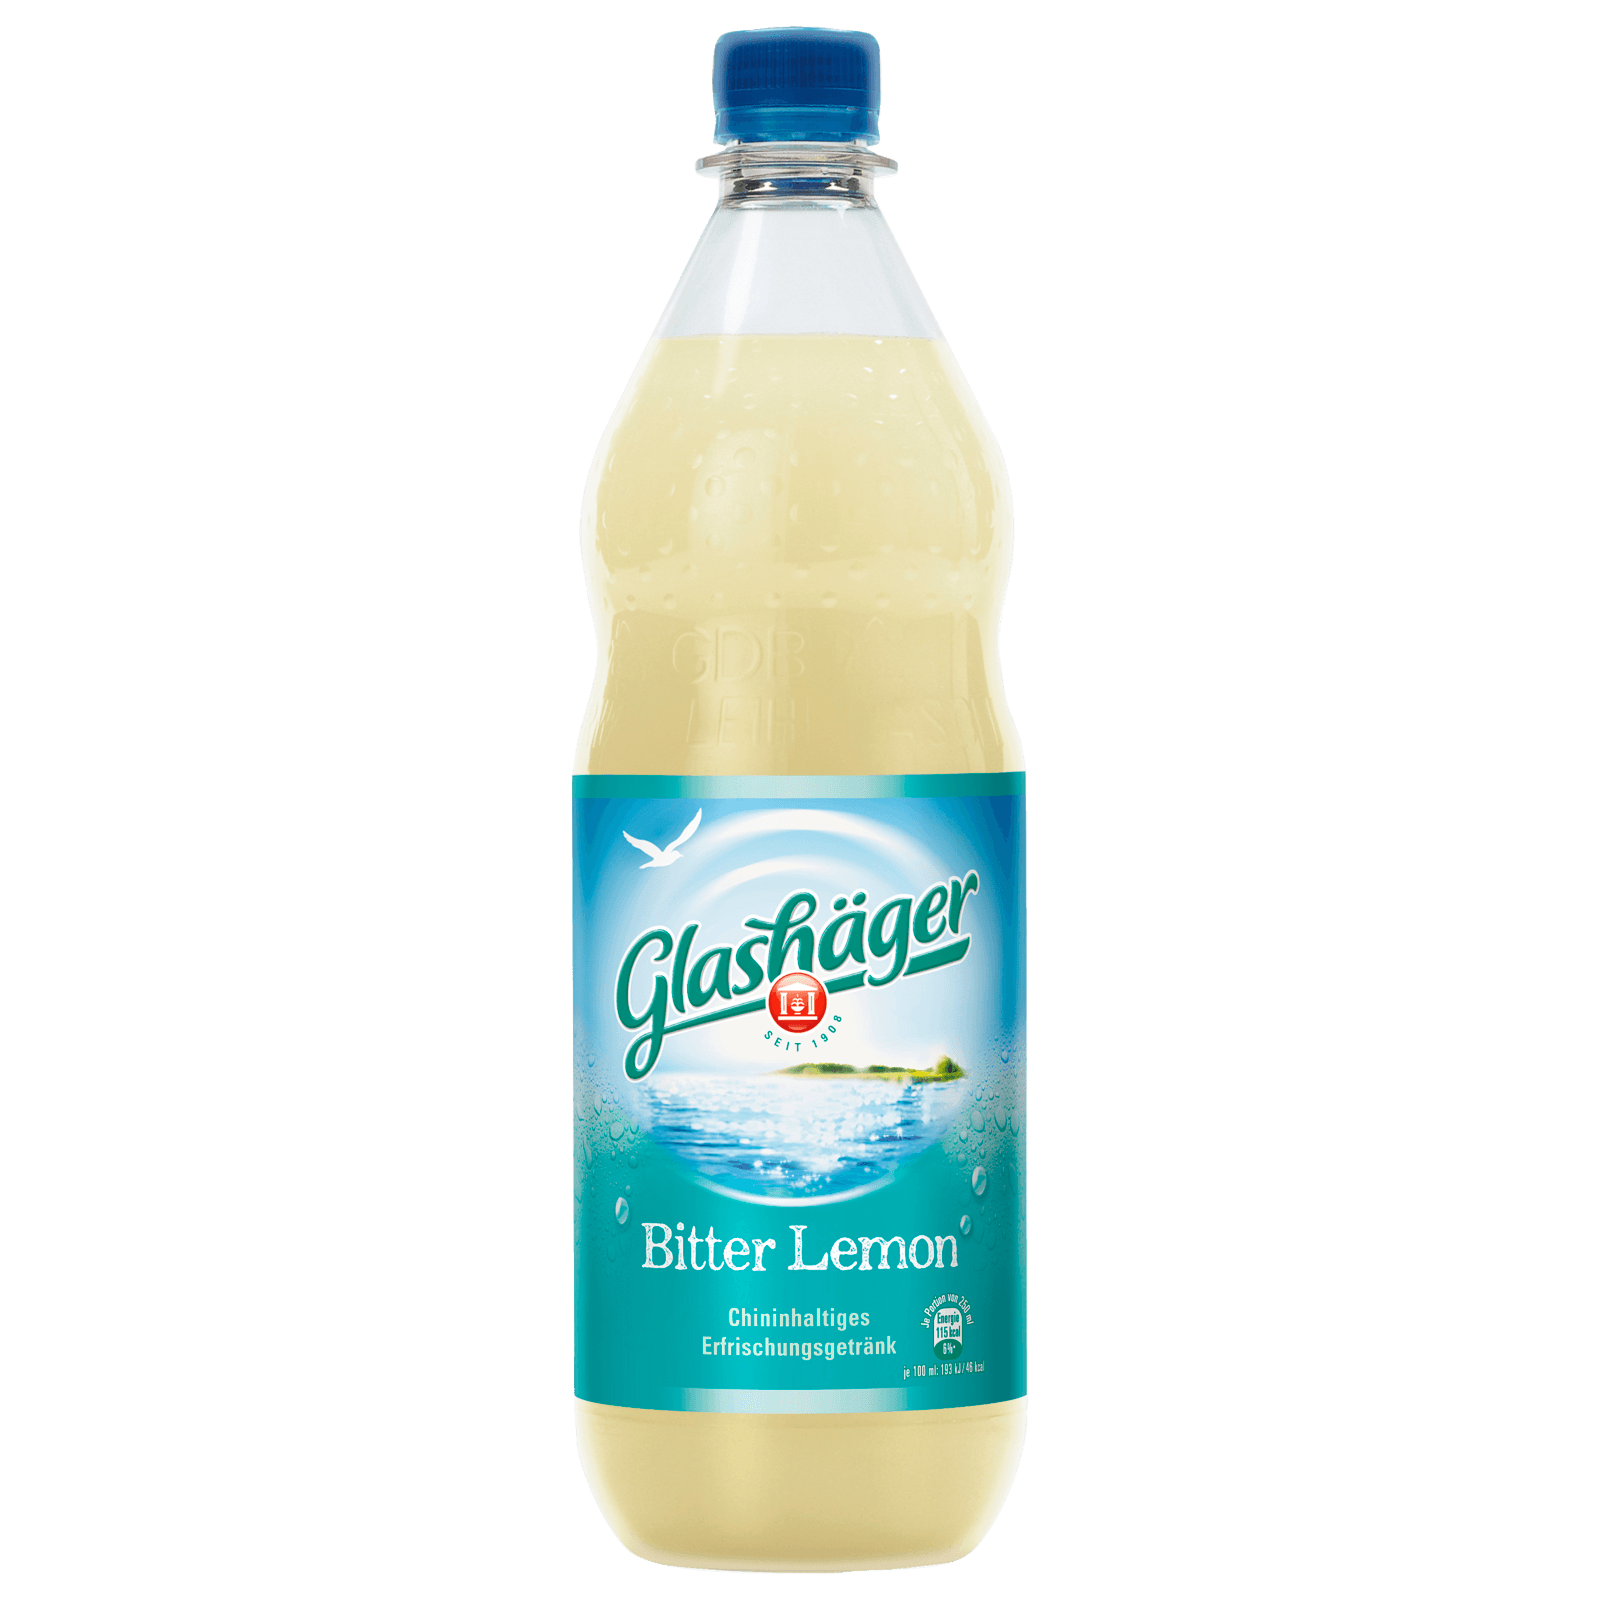 Glashäger Bitter Lemon 1L  für 1.09 EUR